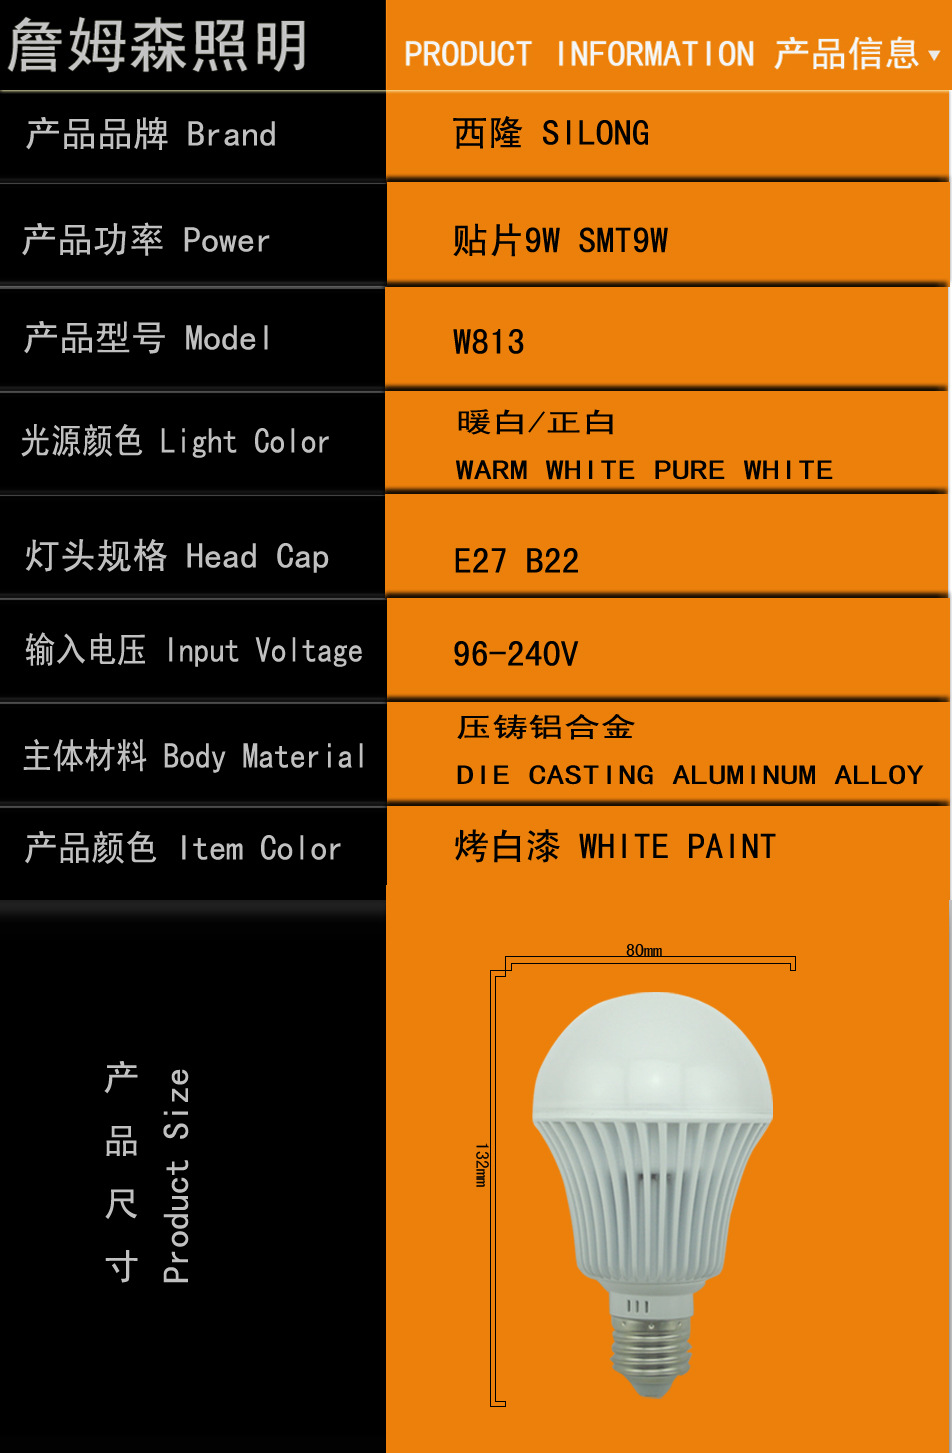 安卓 11 系统 LED 灯自定义：提升效率与个性化的关键功能  第2张